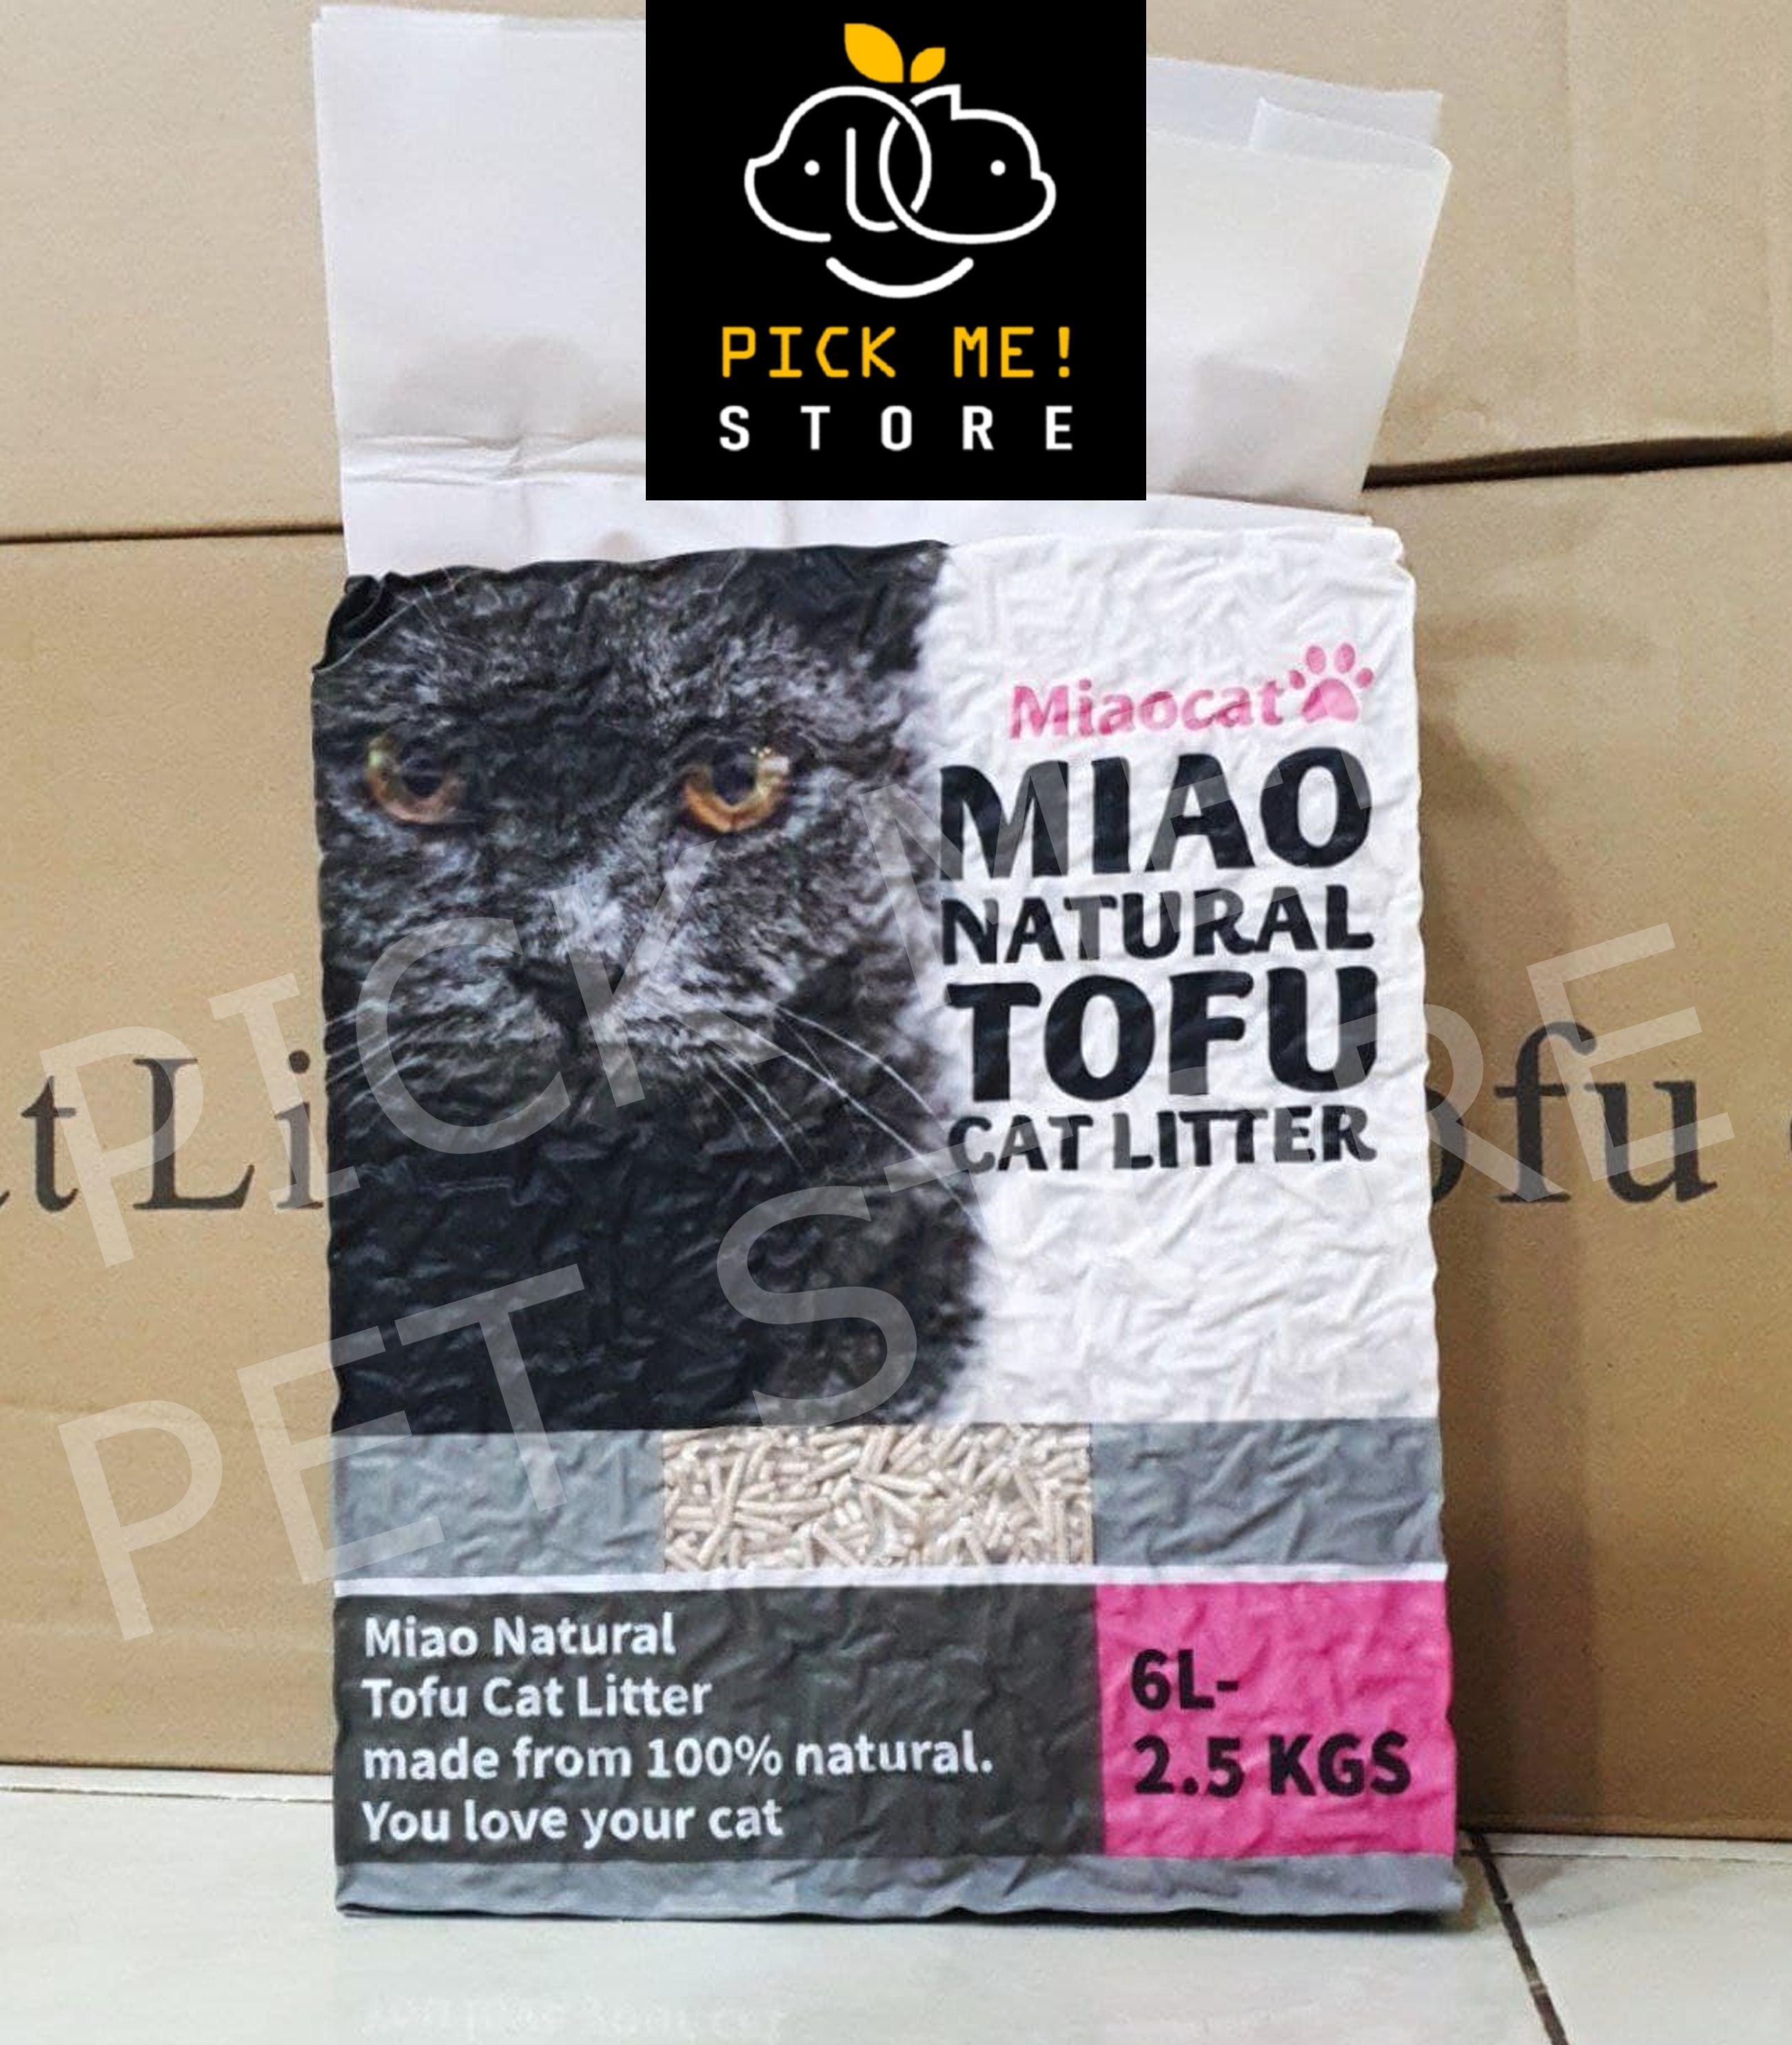 Cát vệ sinh đậu nành hữu cơ MIAO NATURAL TOFU 6L - siêu khử mùi, ít bụi. Có thể xả bồn cầu (Miaocat)